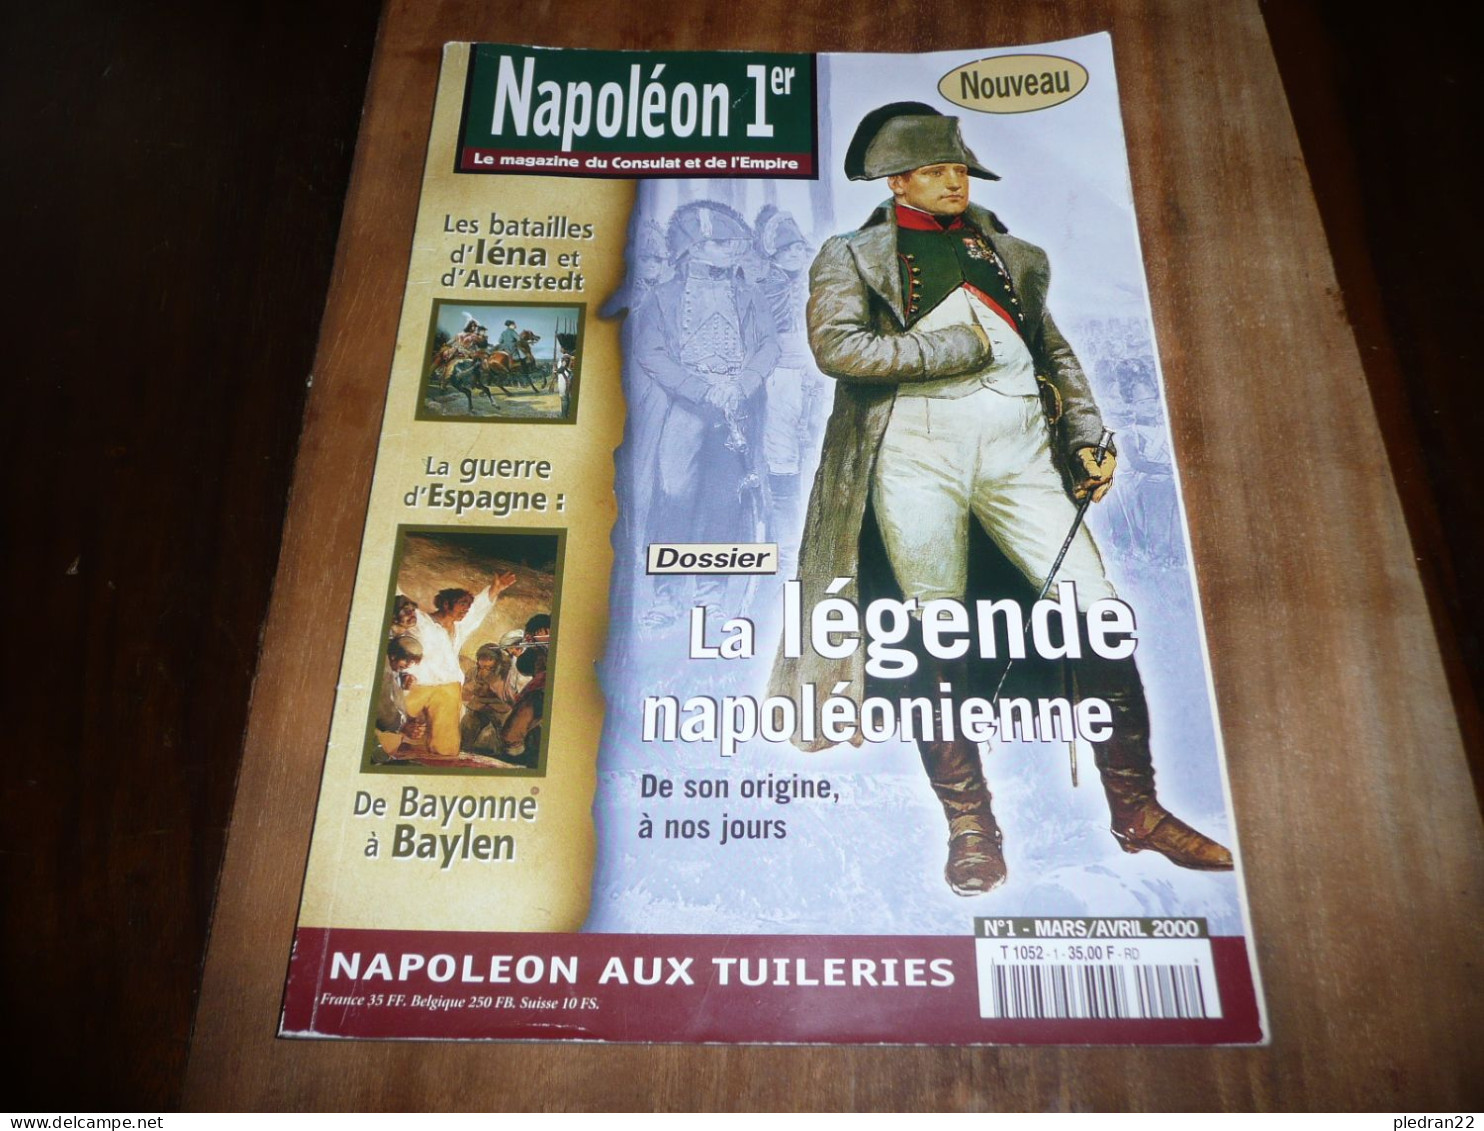 REVUE NAPOLEON 1er LE MAGAZINE DU CONSULAT ET DE L'EMPIRE N° 1 MARS AVRIL 2000 - Geschichte